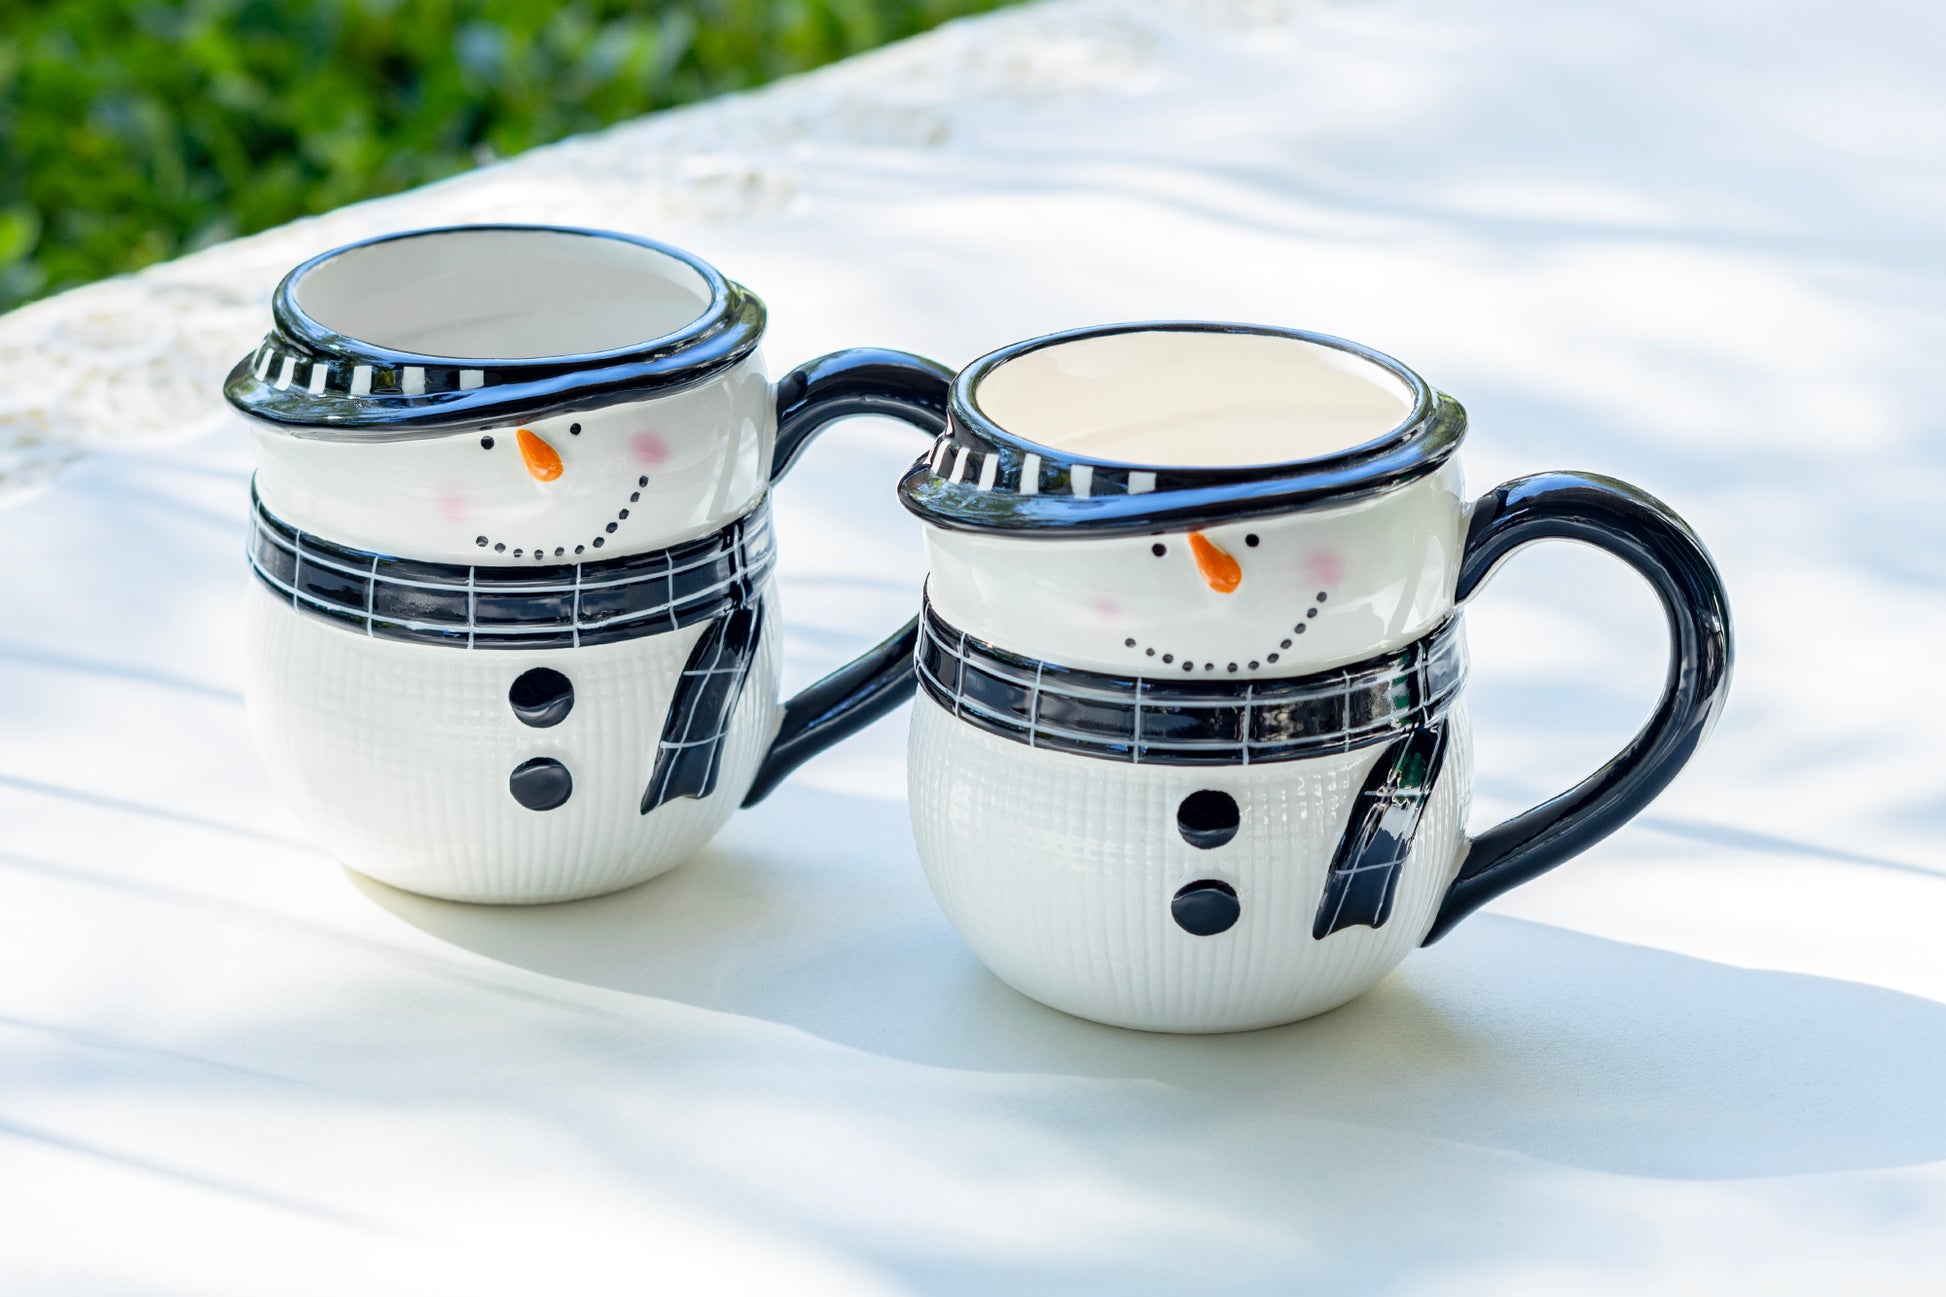 Potter's Studio Holiday Christmas Snowman Coffee Tea Mug set of 2